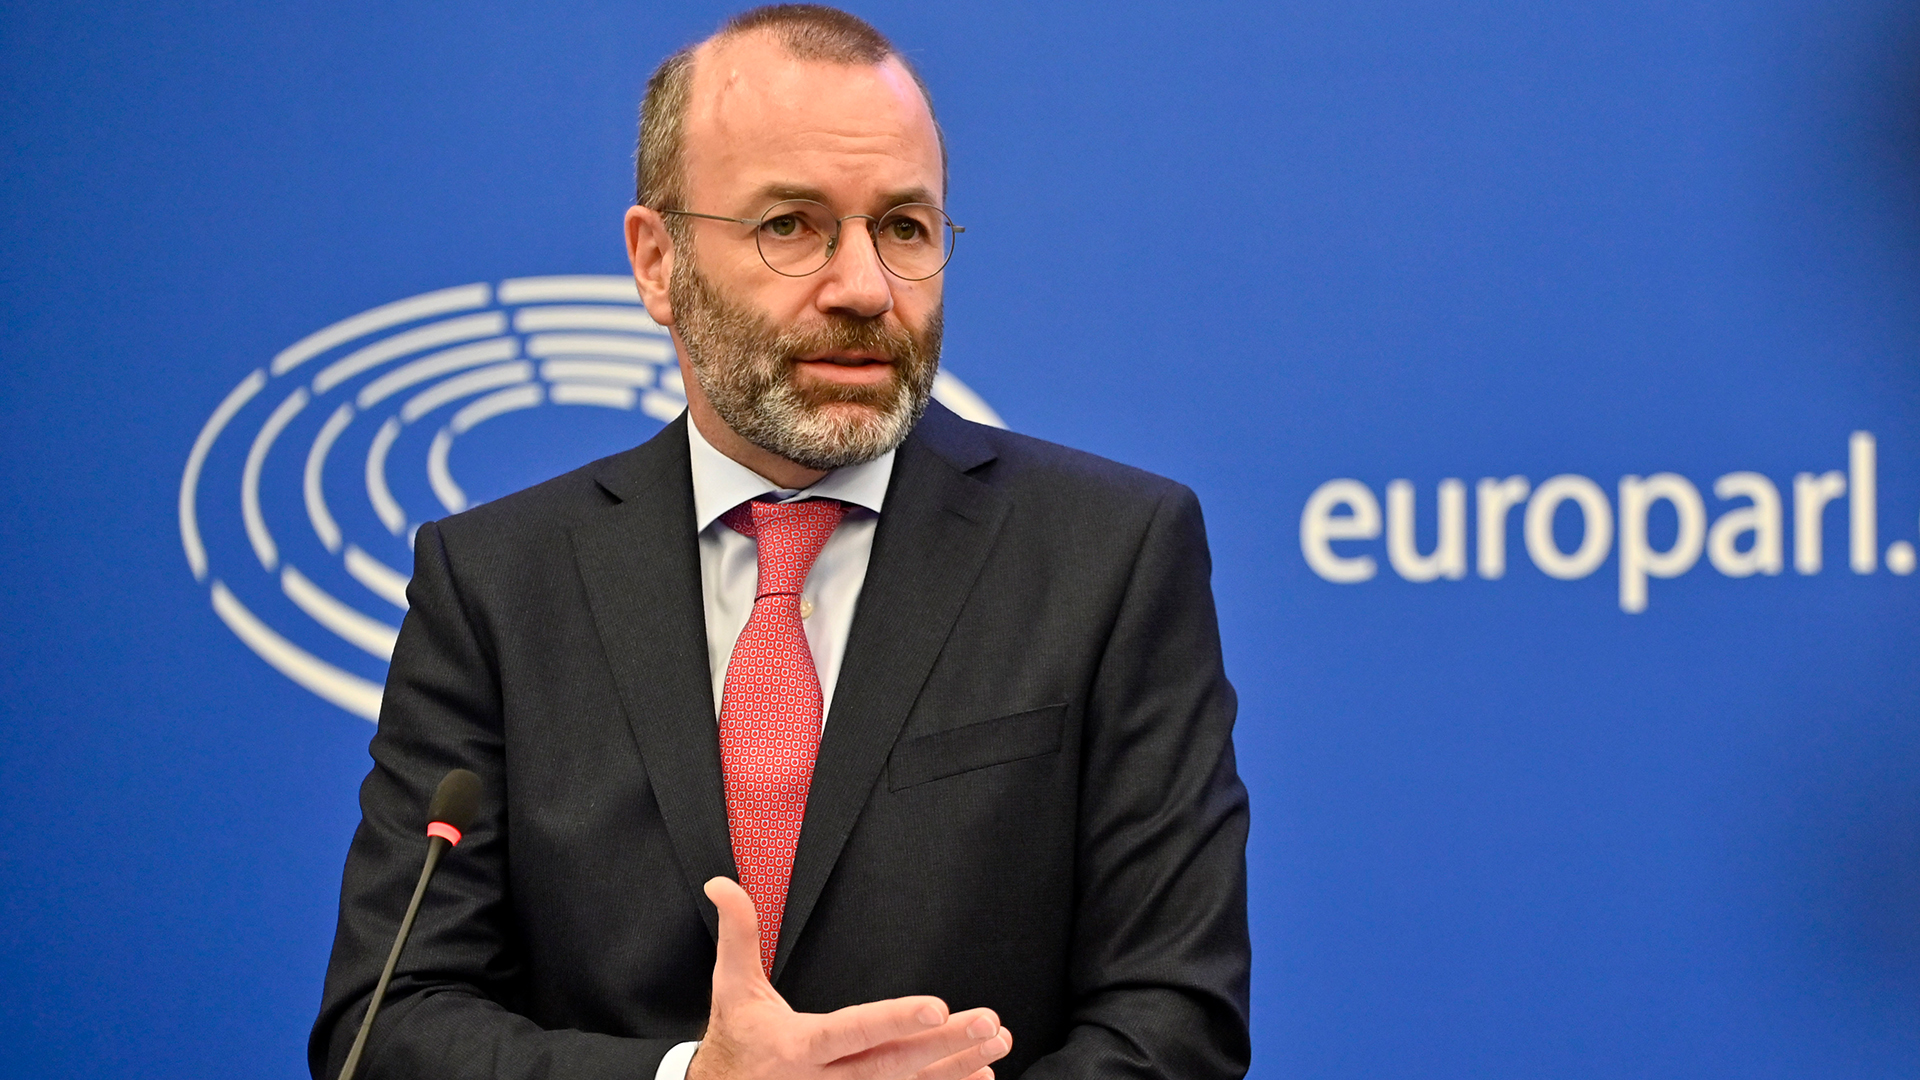 EVP-Chef zu EU-Sanktionen: “Wir brauchen jetzt den Befreiungsschlag”